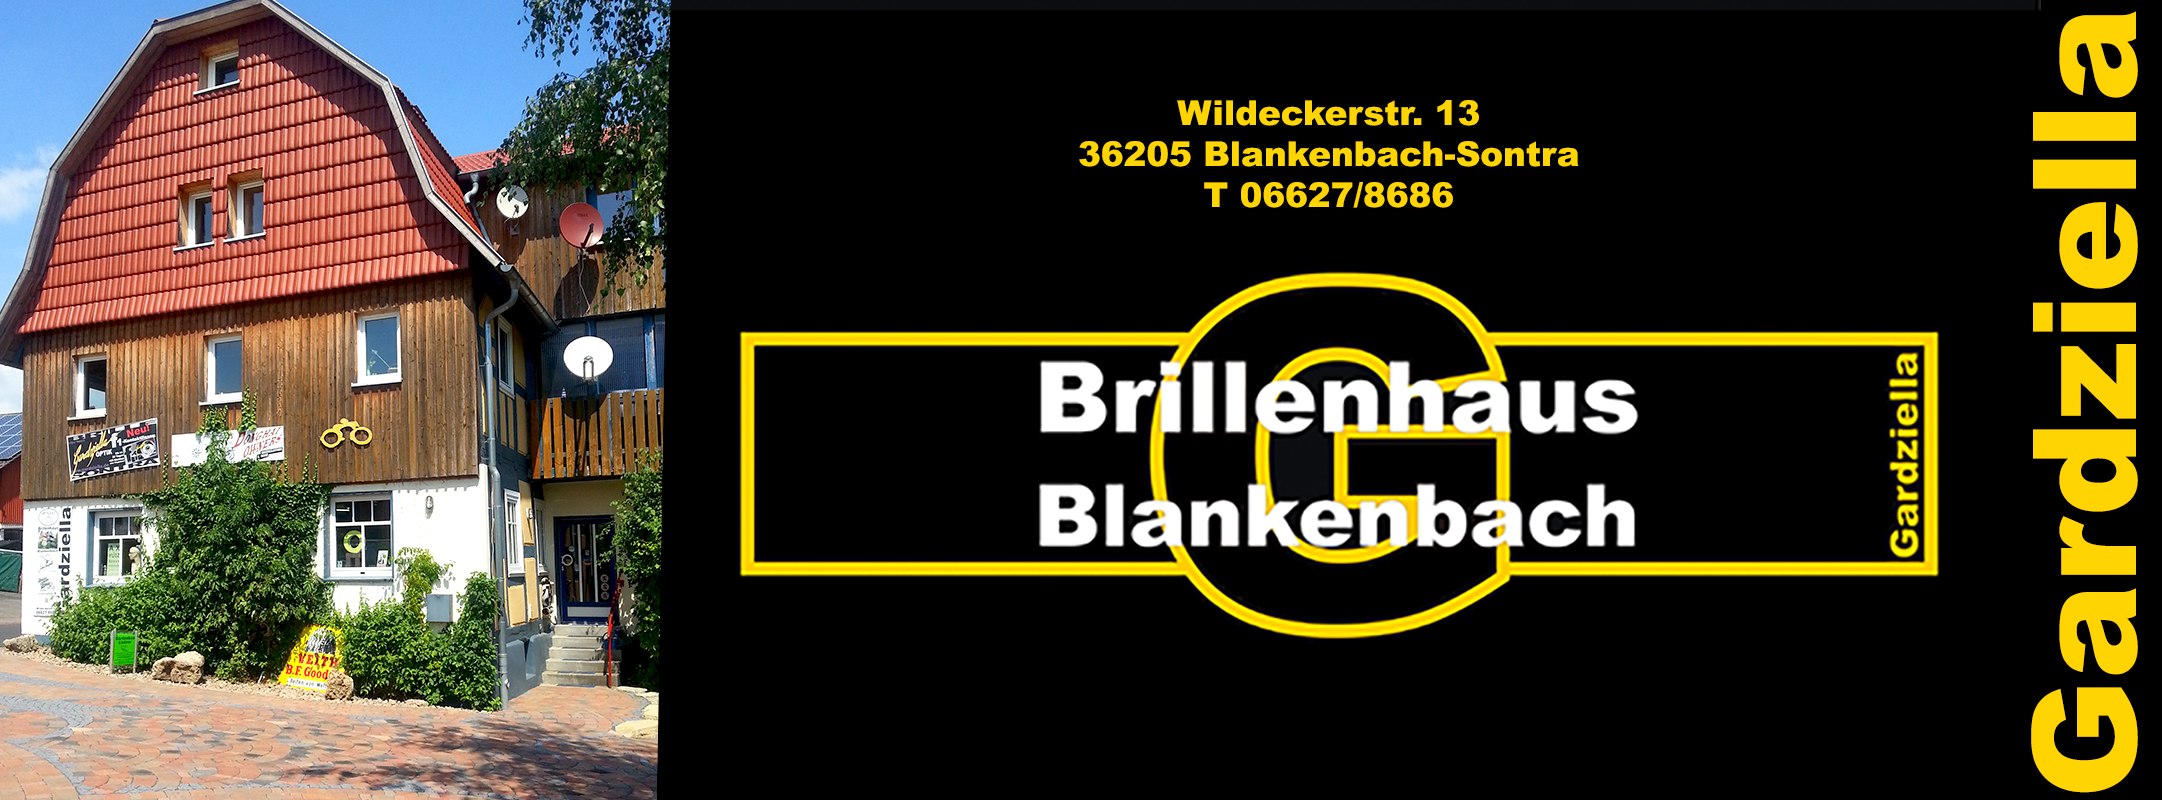 Angebot | Brillenhaus Blankenbach